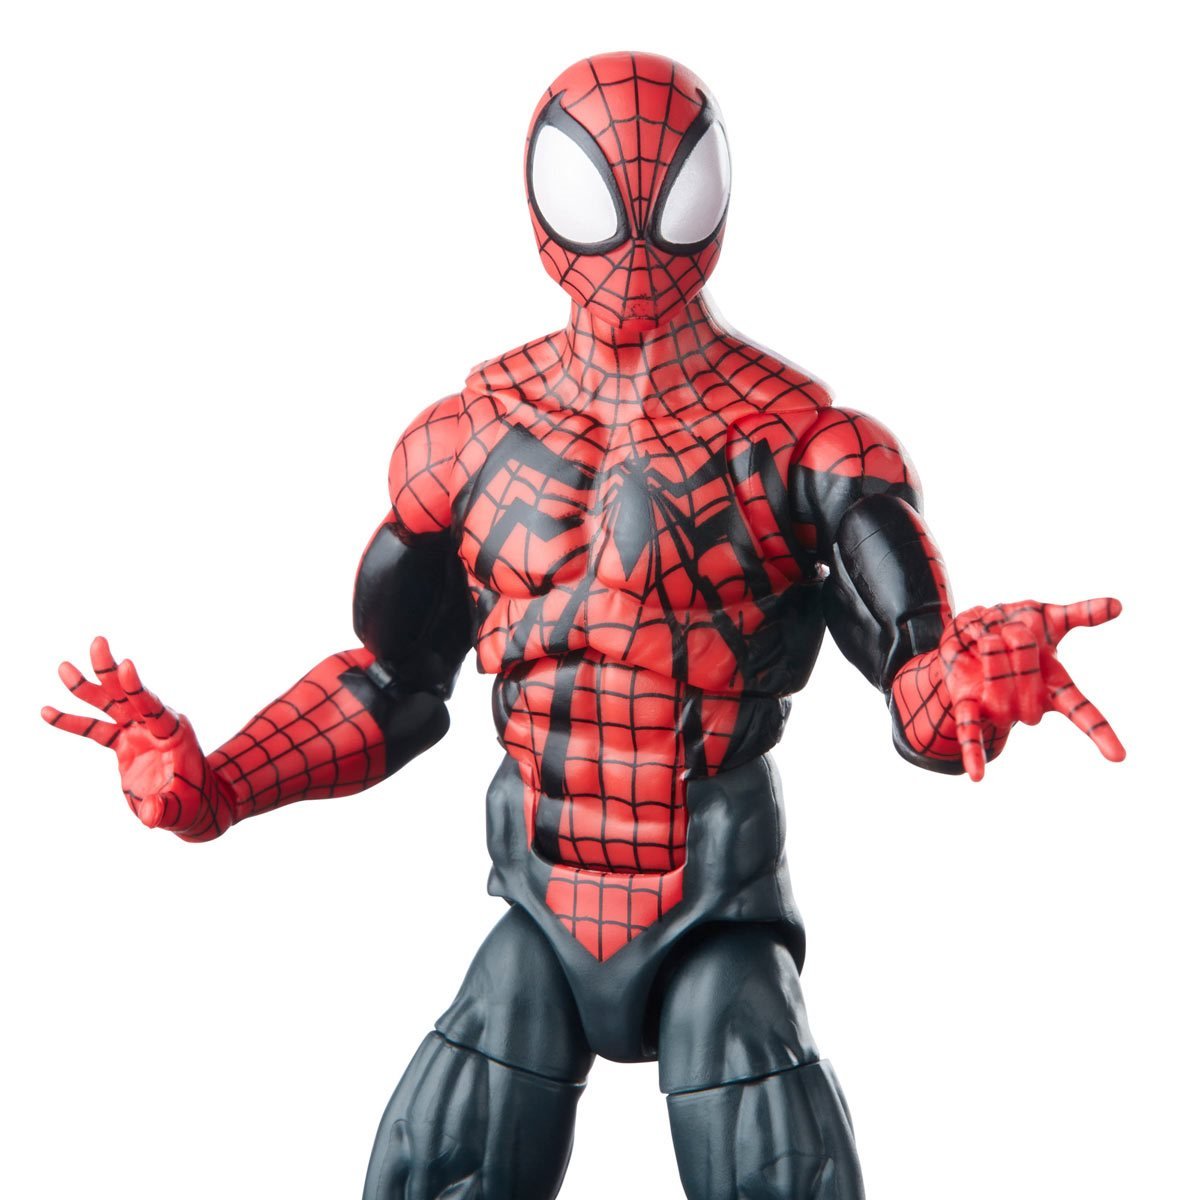 Spider-Man Retro Marvel Legends Ben Reilly Spider-Man 6-Inch Action Figure Pop-O-Loco